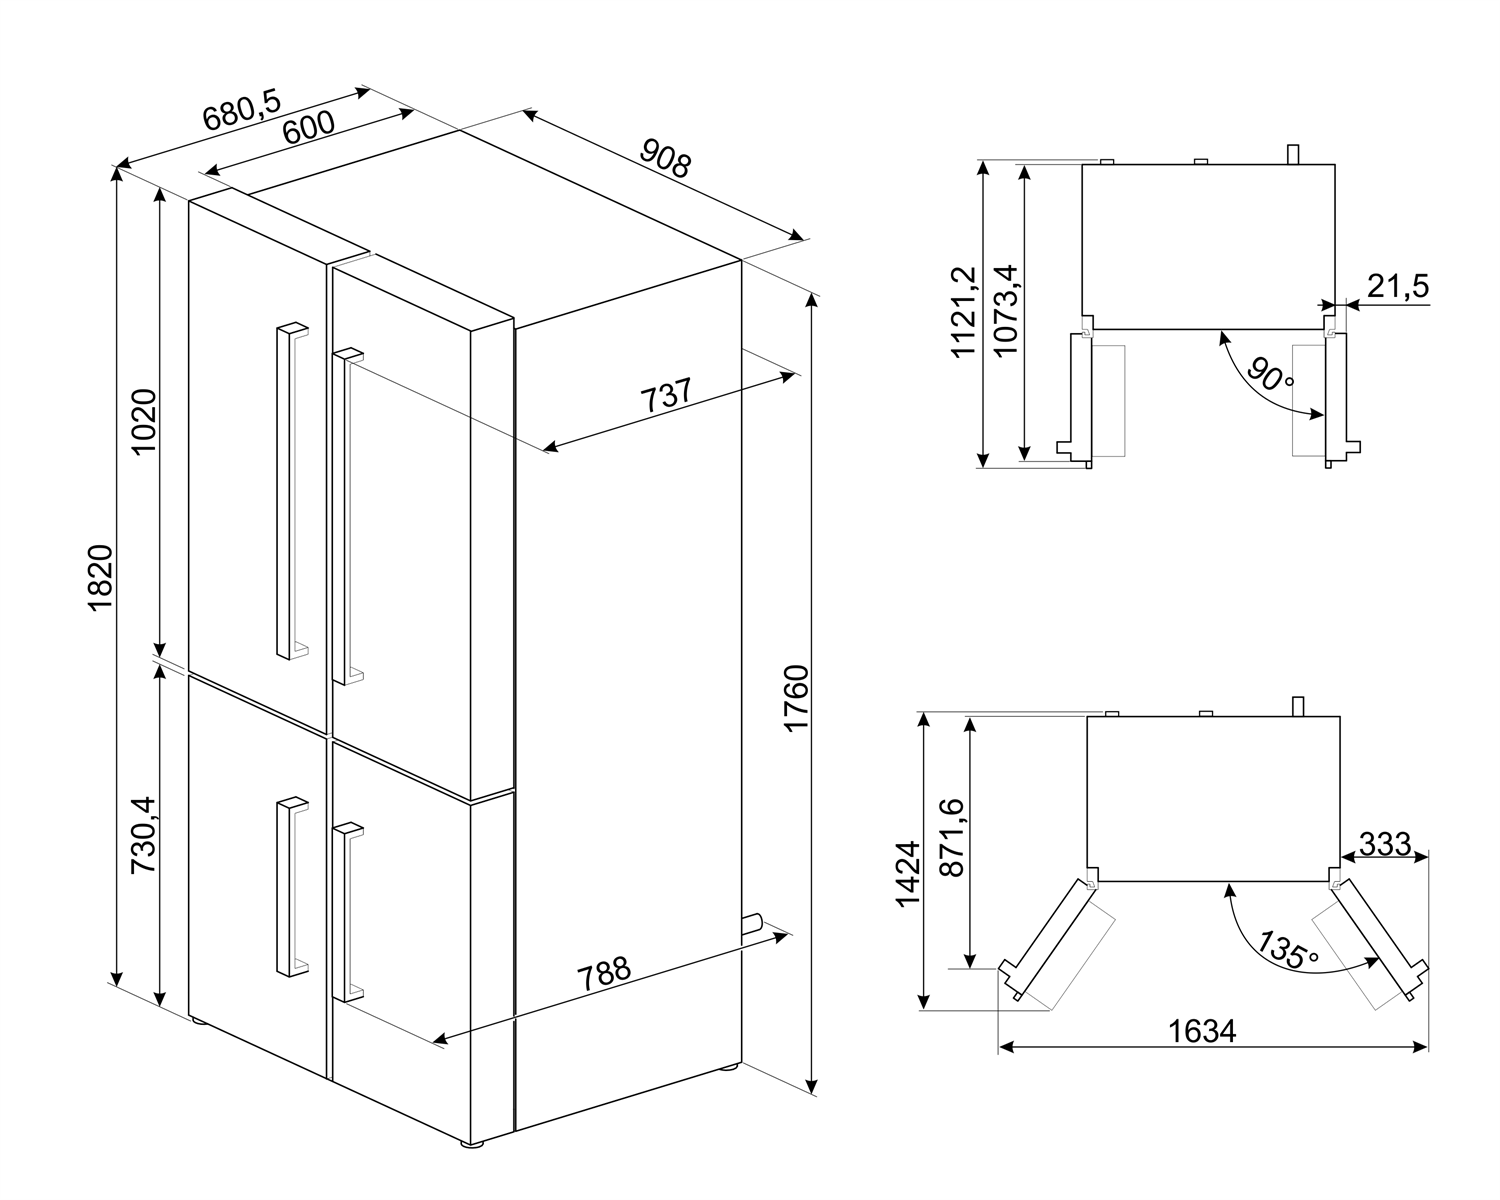 Maattekening SMEG side-by-side koelkast FQ60X2PEAI